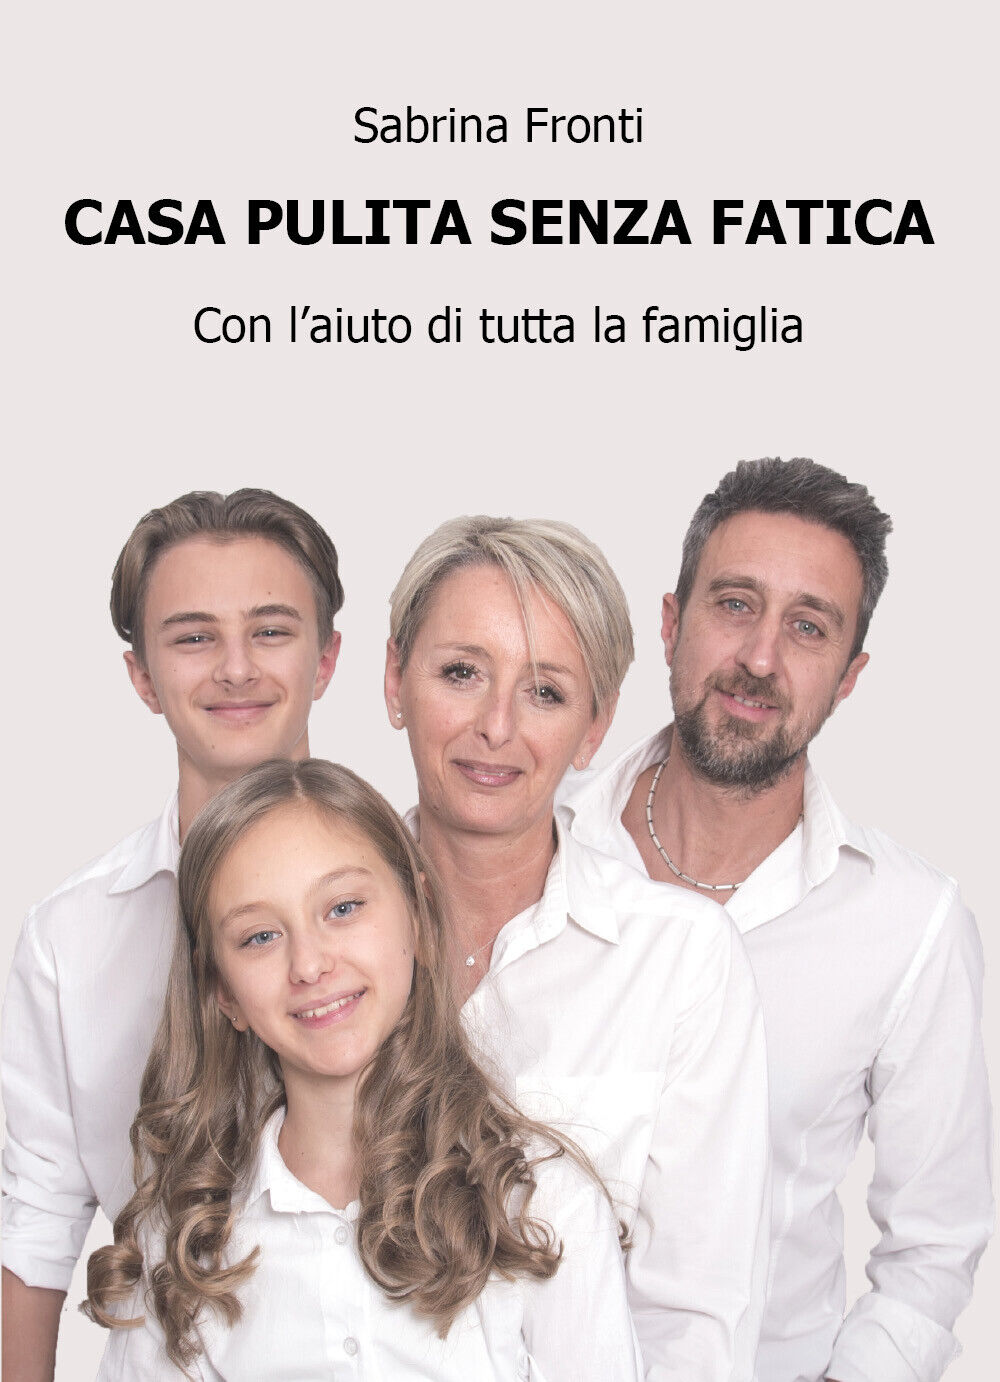 Casa pulita senza fatica - con L'aiuto di tutta la famiglia, di Sabrina Fronti